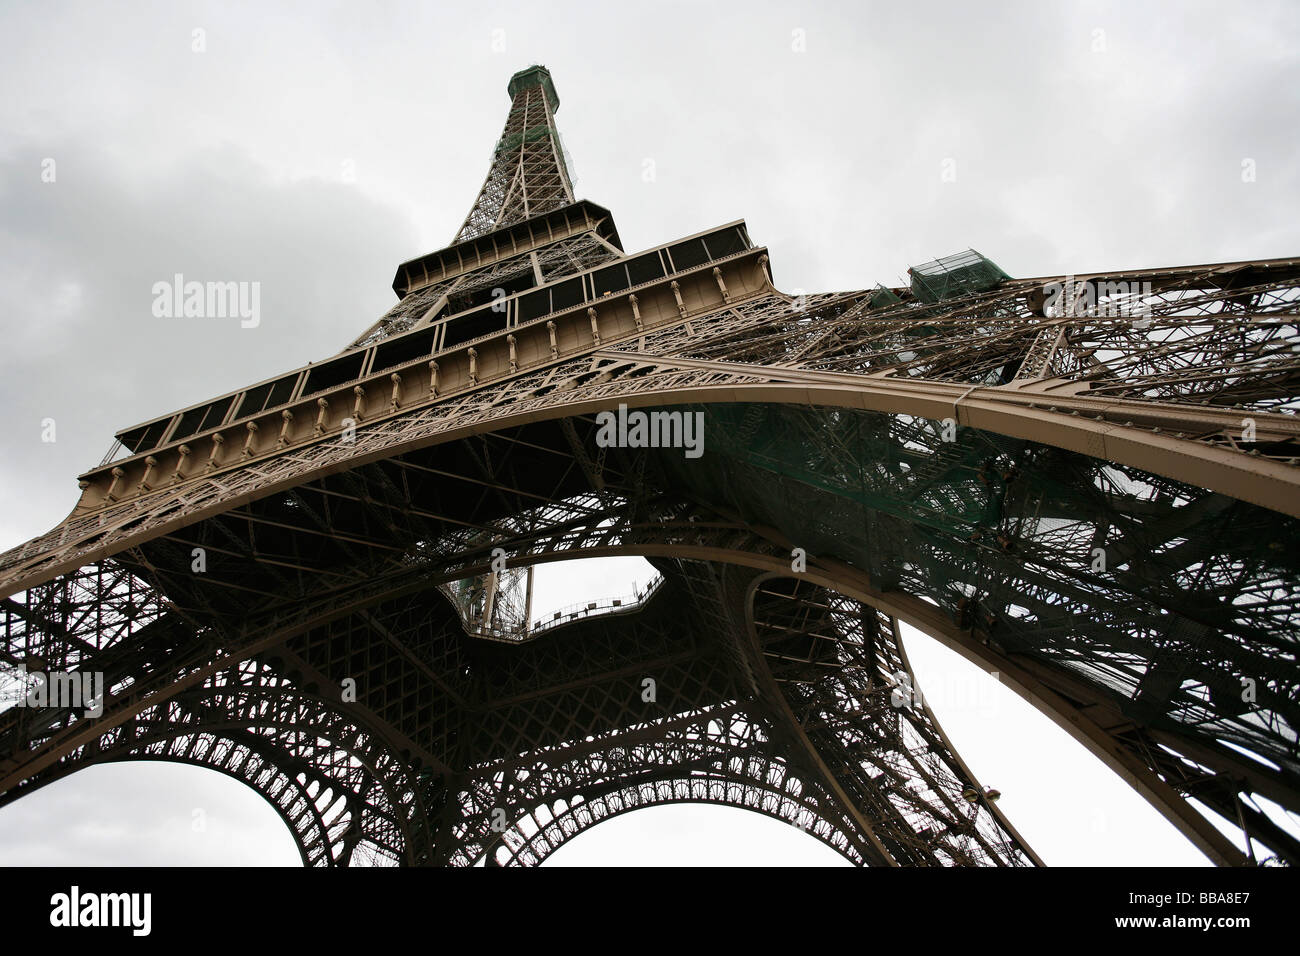 Eiffel Tower, China Stock Photo - Alamy